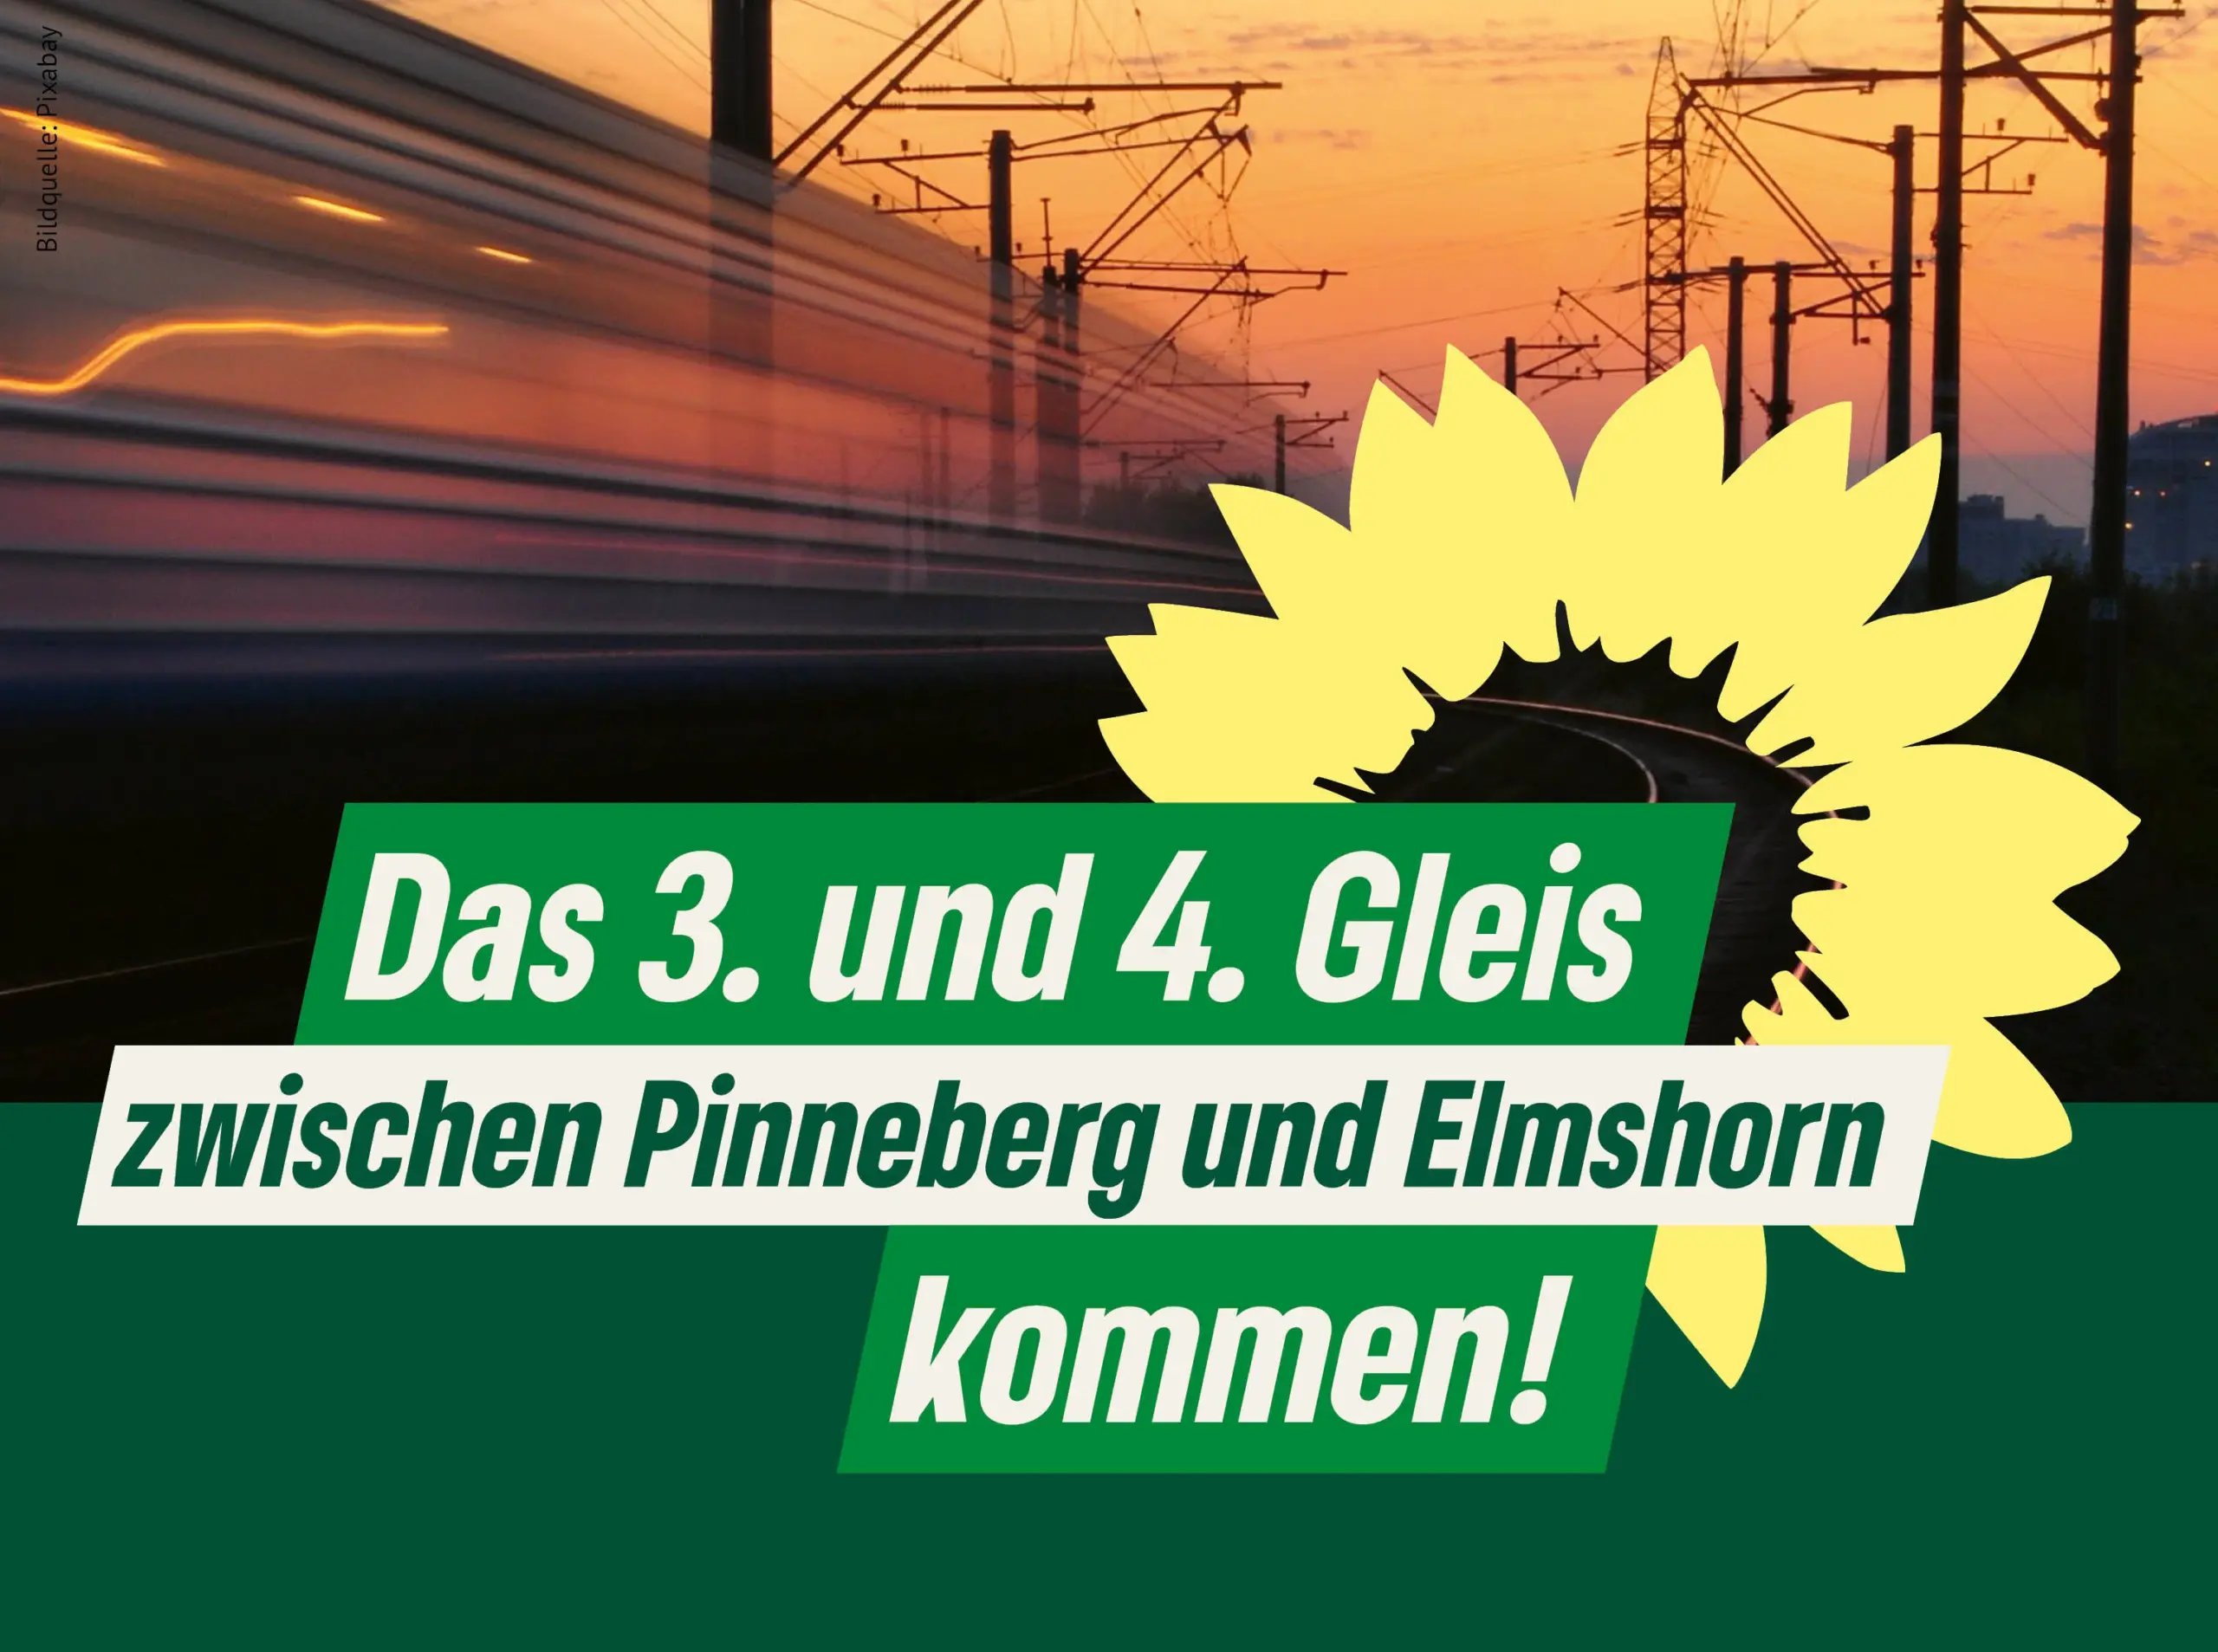 Zug vor einem Sonnenuntergang. Text: "Das dritte und vierte Gleis zwischen Pinneberg und Elmshorn kommen!" Daneben die gelbe Sonnenblume der GRÜNEN.